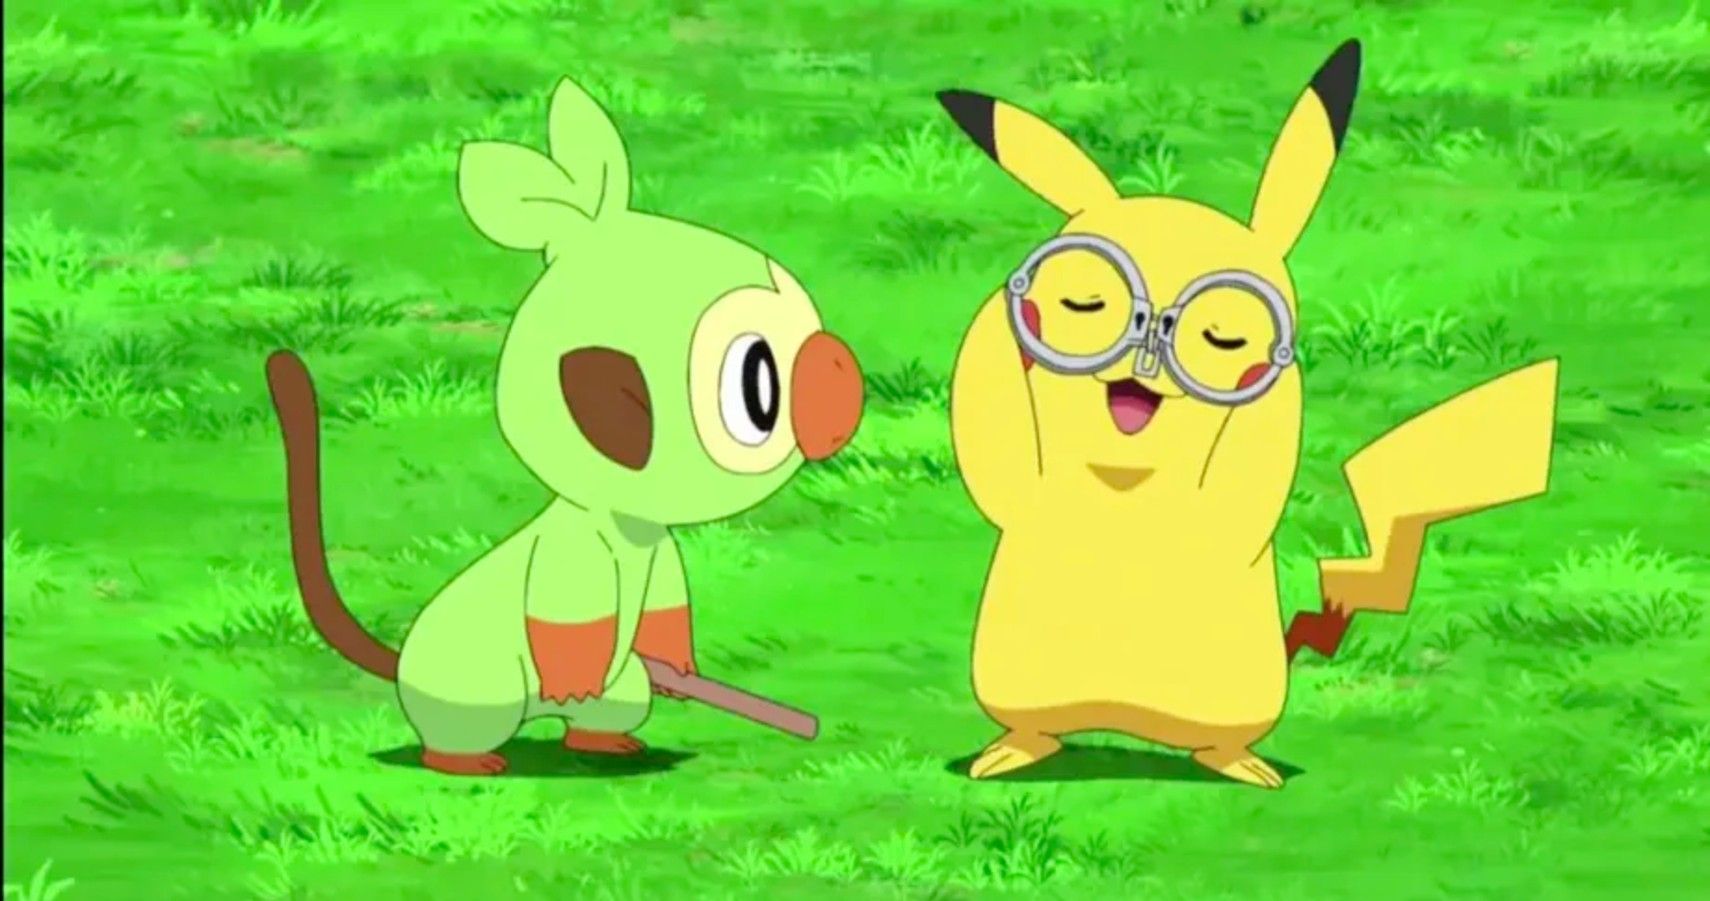 grookey and pikachu